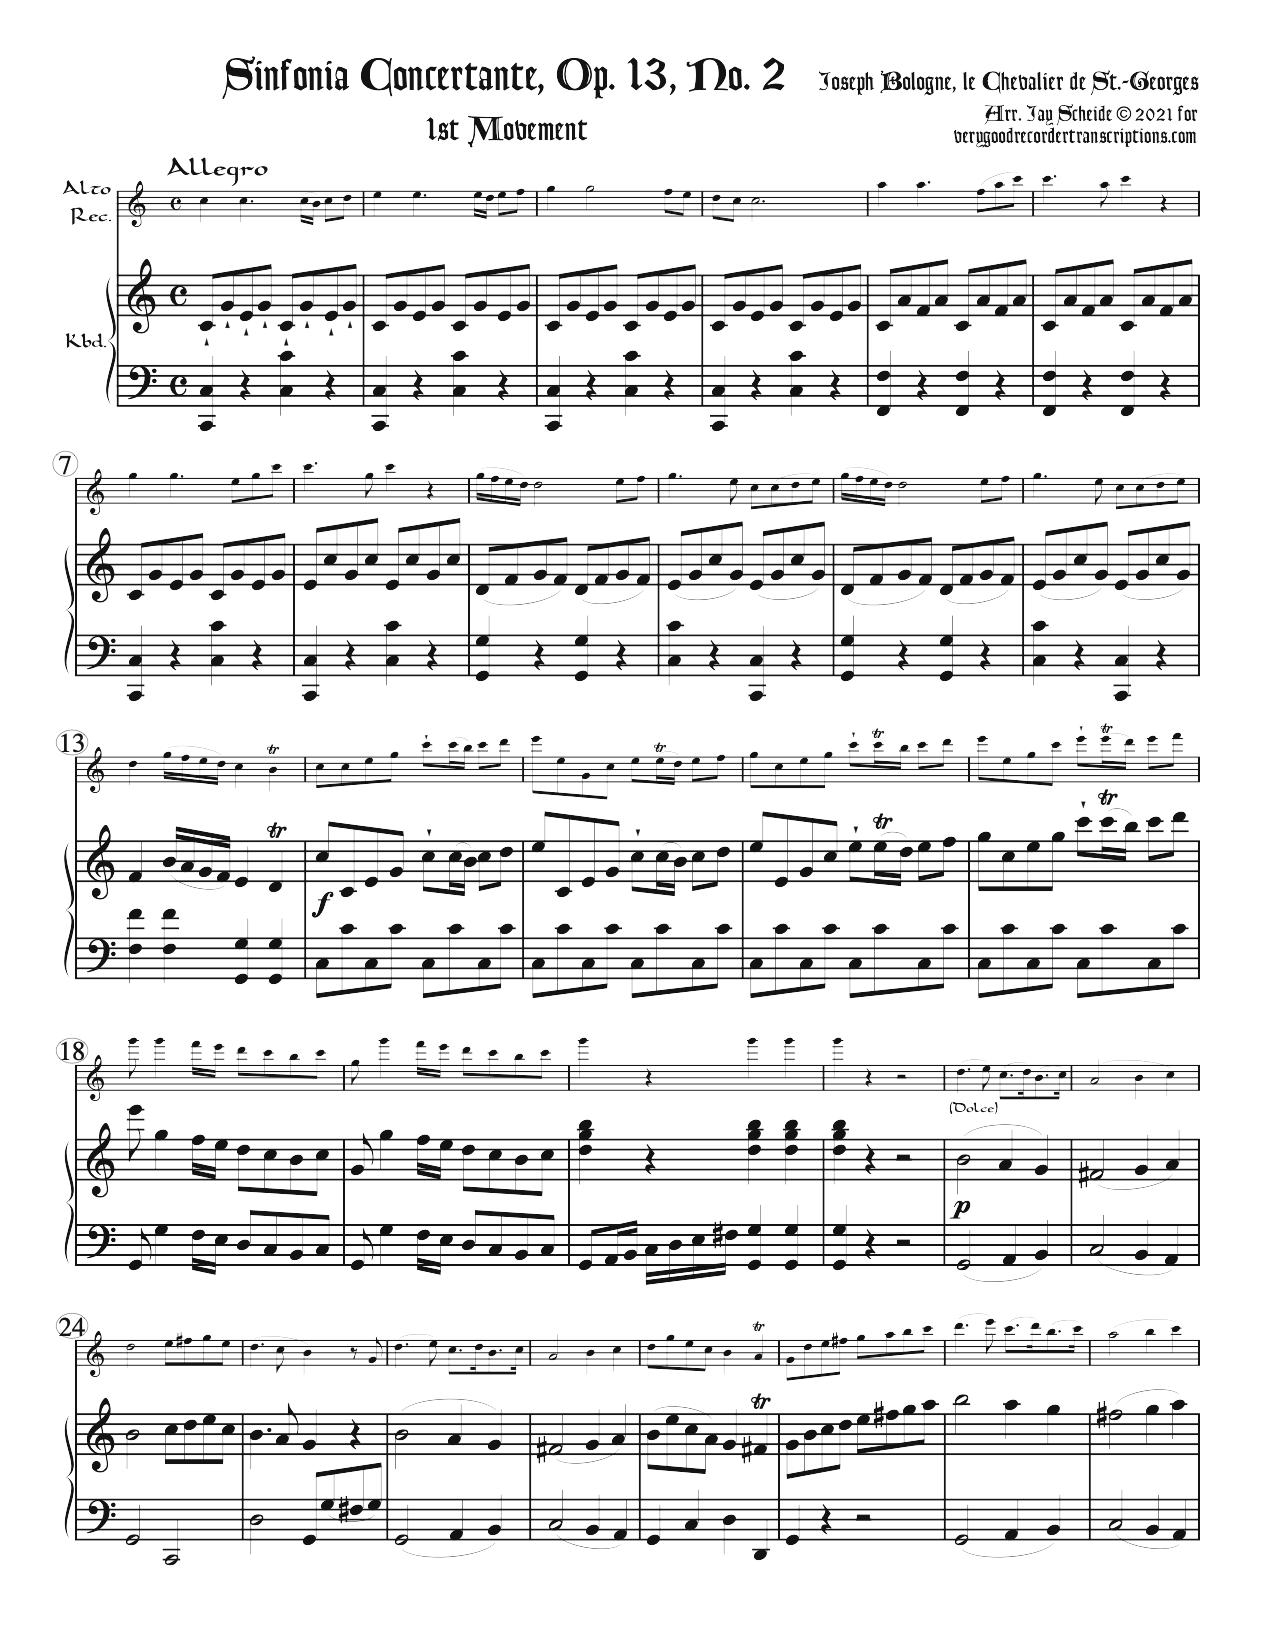 Sinfonia concertante, Op. 13, No. 2